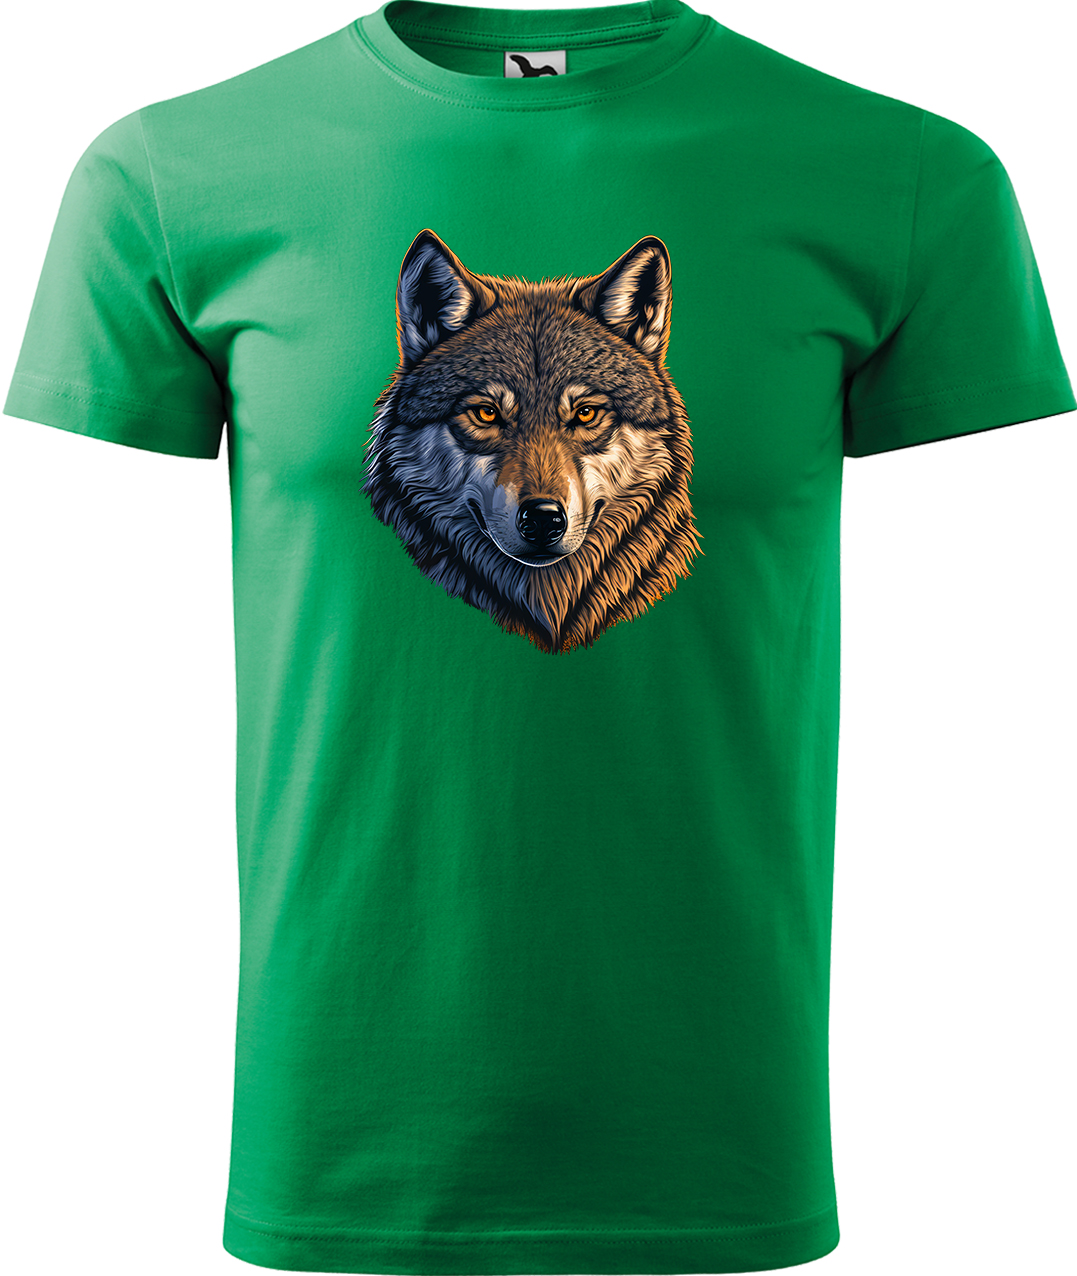 Pánské tričko s vlkem - Hlava vlka Velikost: S, Barva: Středně zelená (16), Střih: pánský